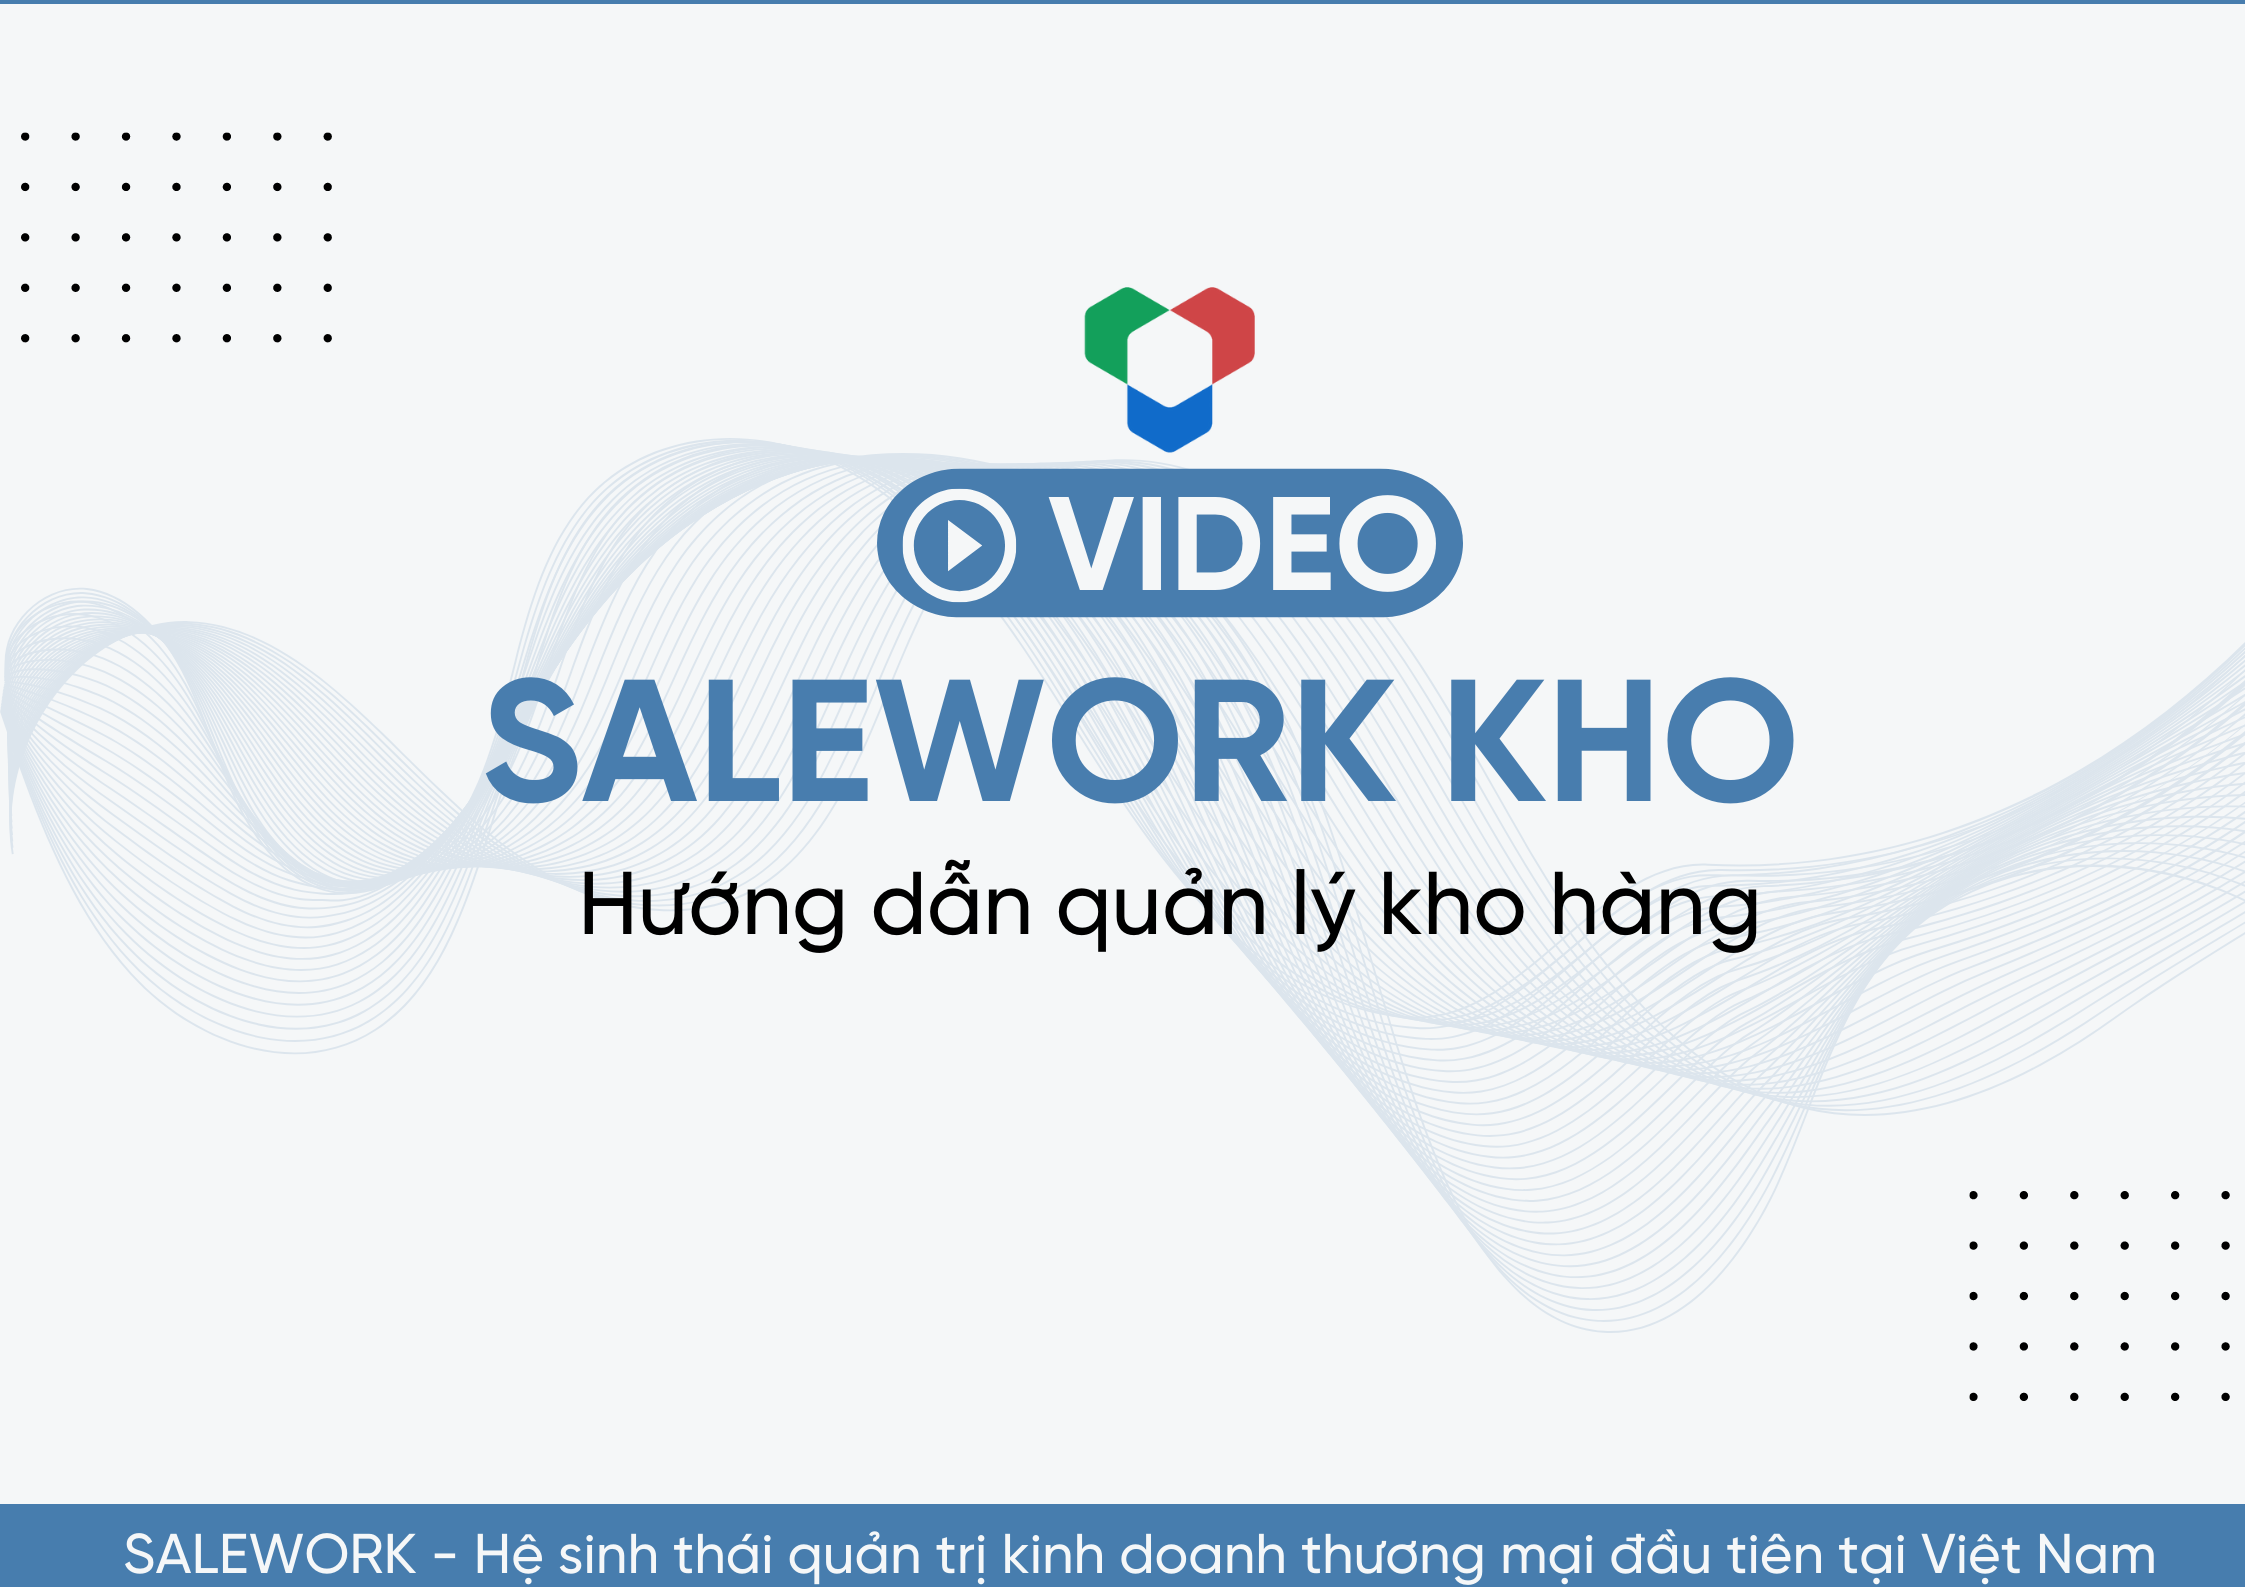 [VIDEO] Hướng dẫn quản lý kho hàng tại Salework Kho. - 12